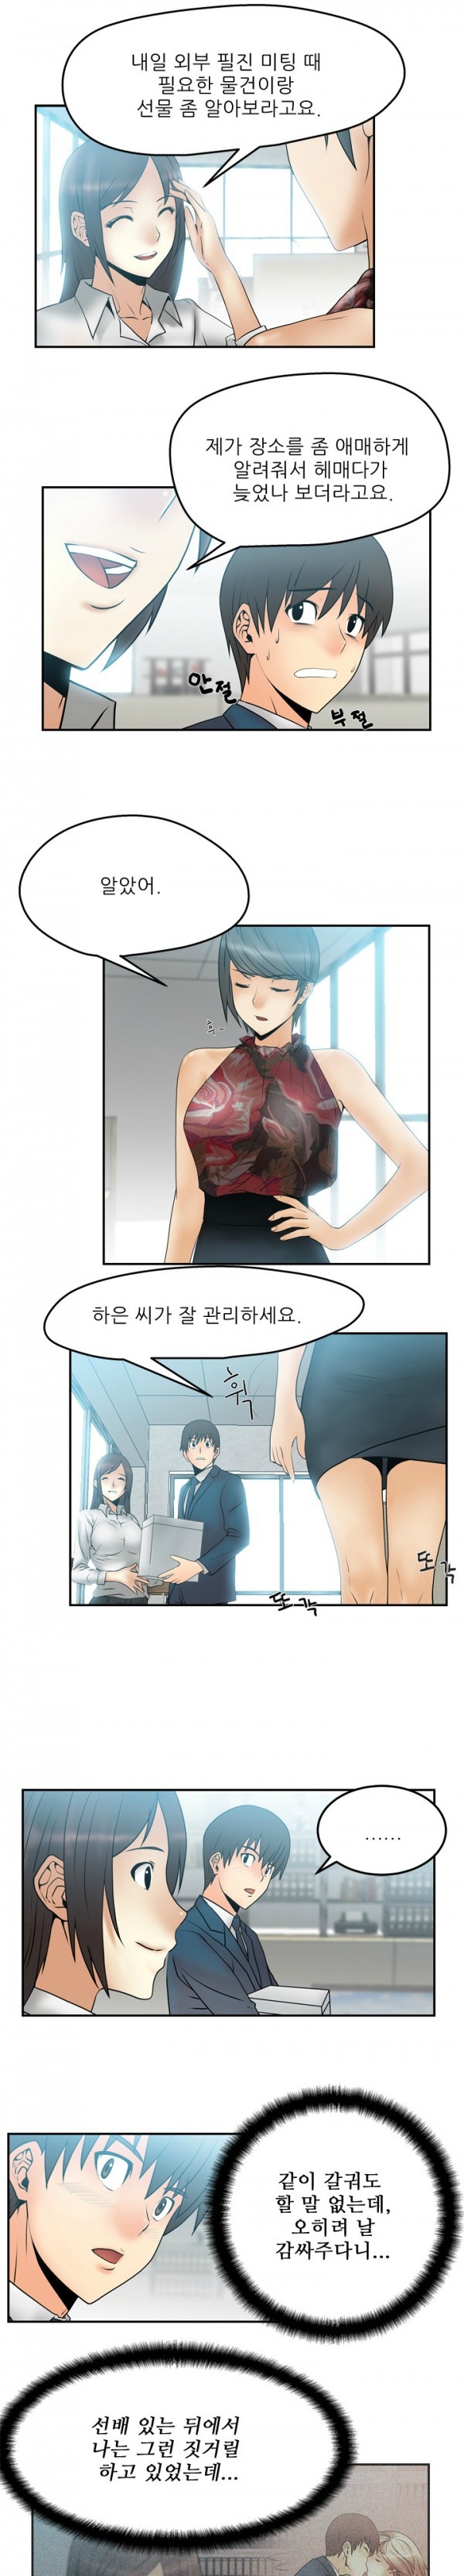 [Minu Mindu] Office Lady Vol. 1 [Korean] 59